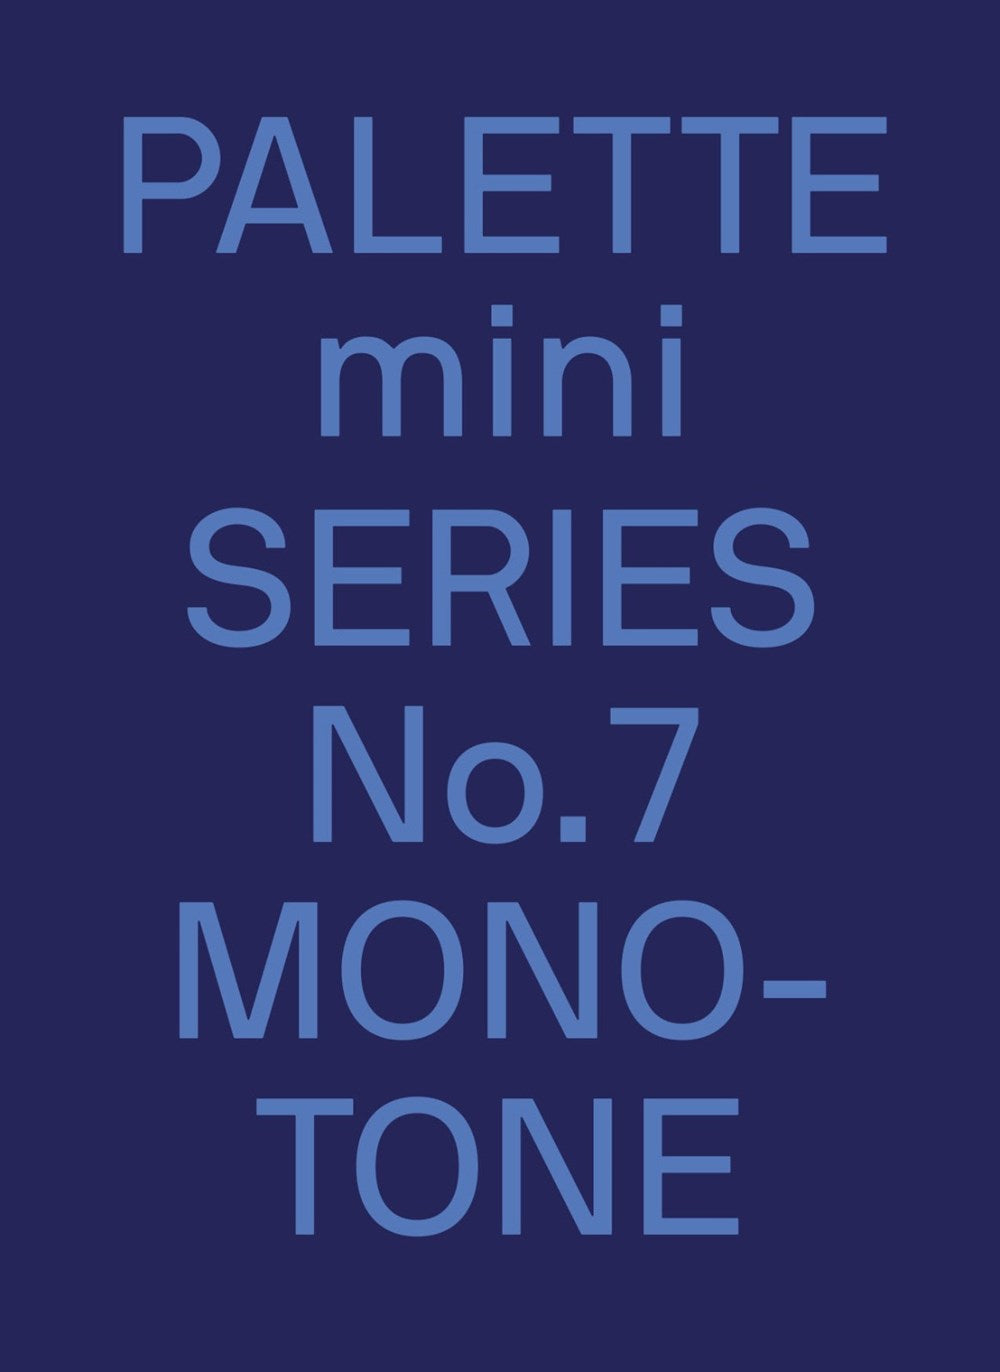 Palette Mini 07: Monotone: New Single-Color Graphics (Palette Mini, 7)